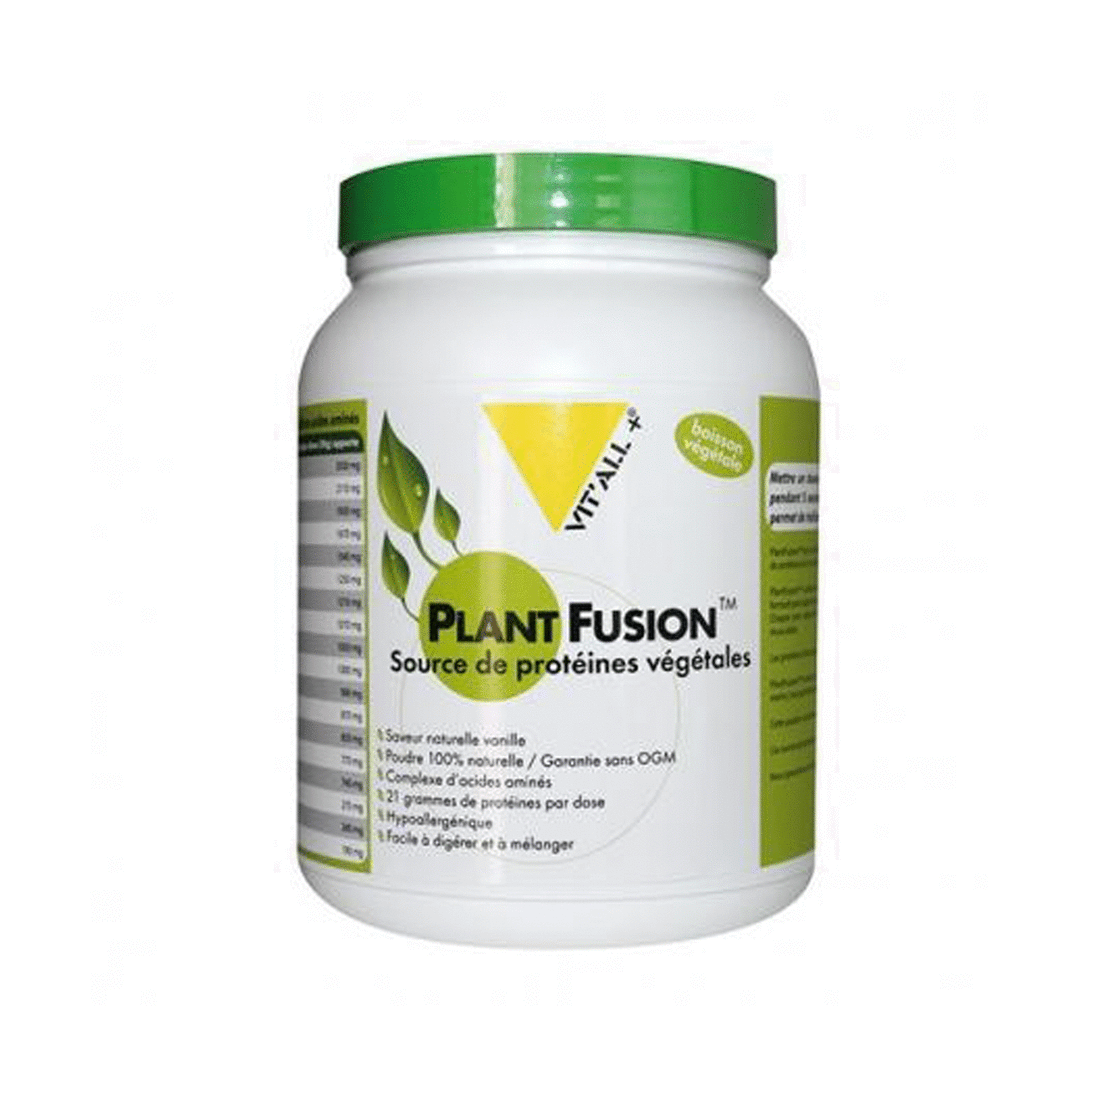 Plant fusion - Protéines végétales - Saveur Vanille (450 g)